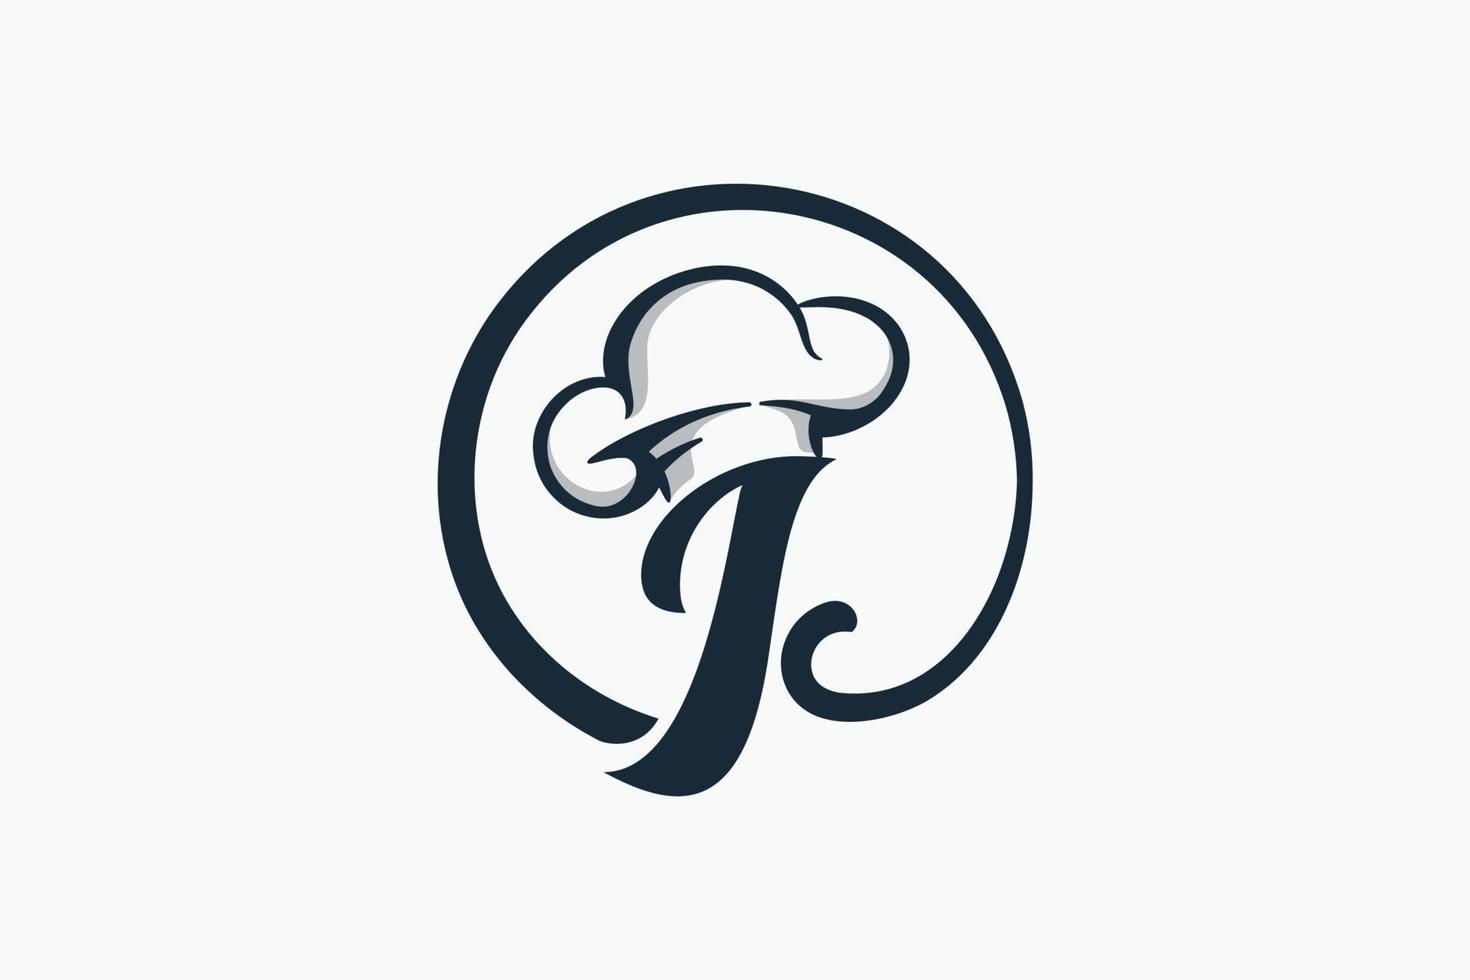 logo du chef avec une combinaison de la lettre i et du chapeau de chef pour toute entreprise, en particulier pour le restaurant, le café, la restauration, etc. vecteur